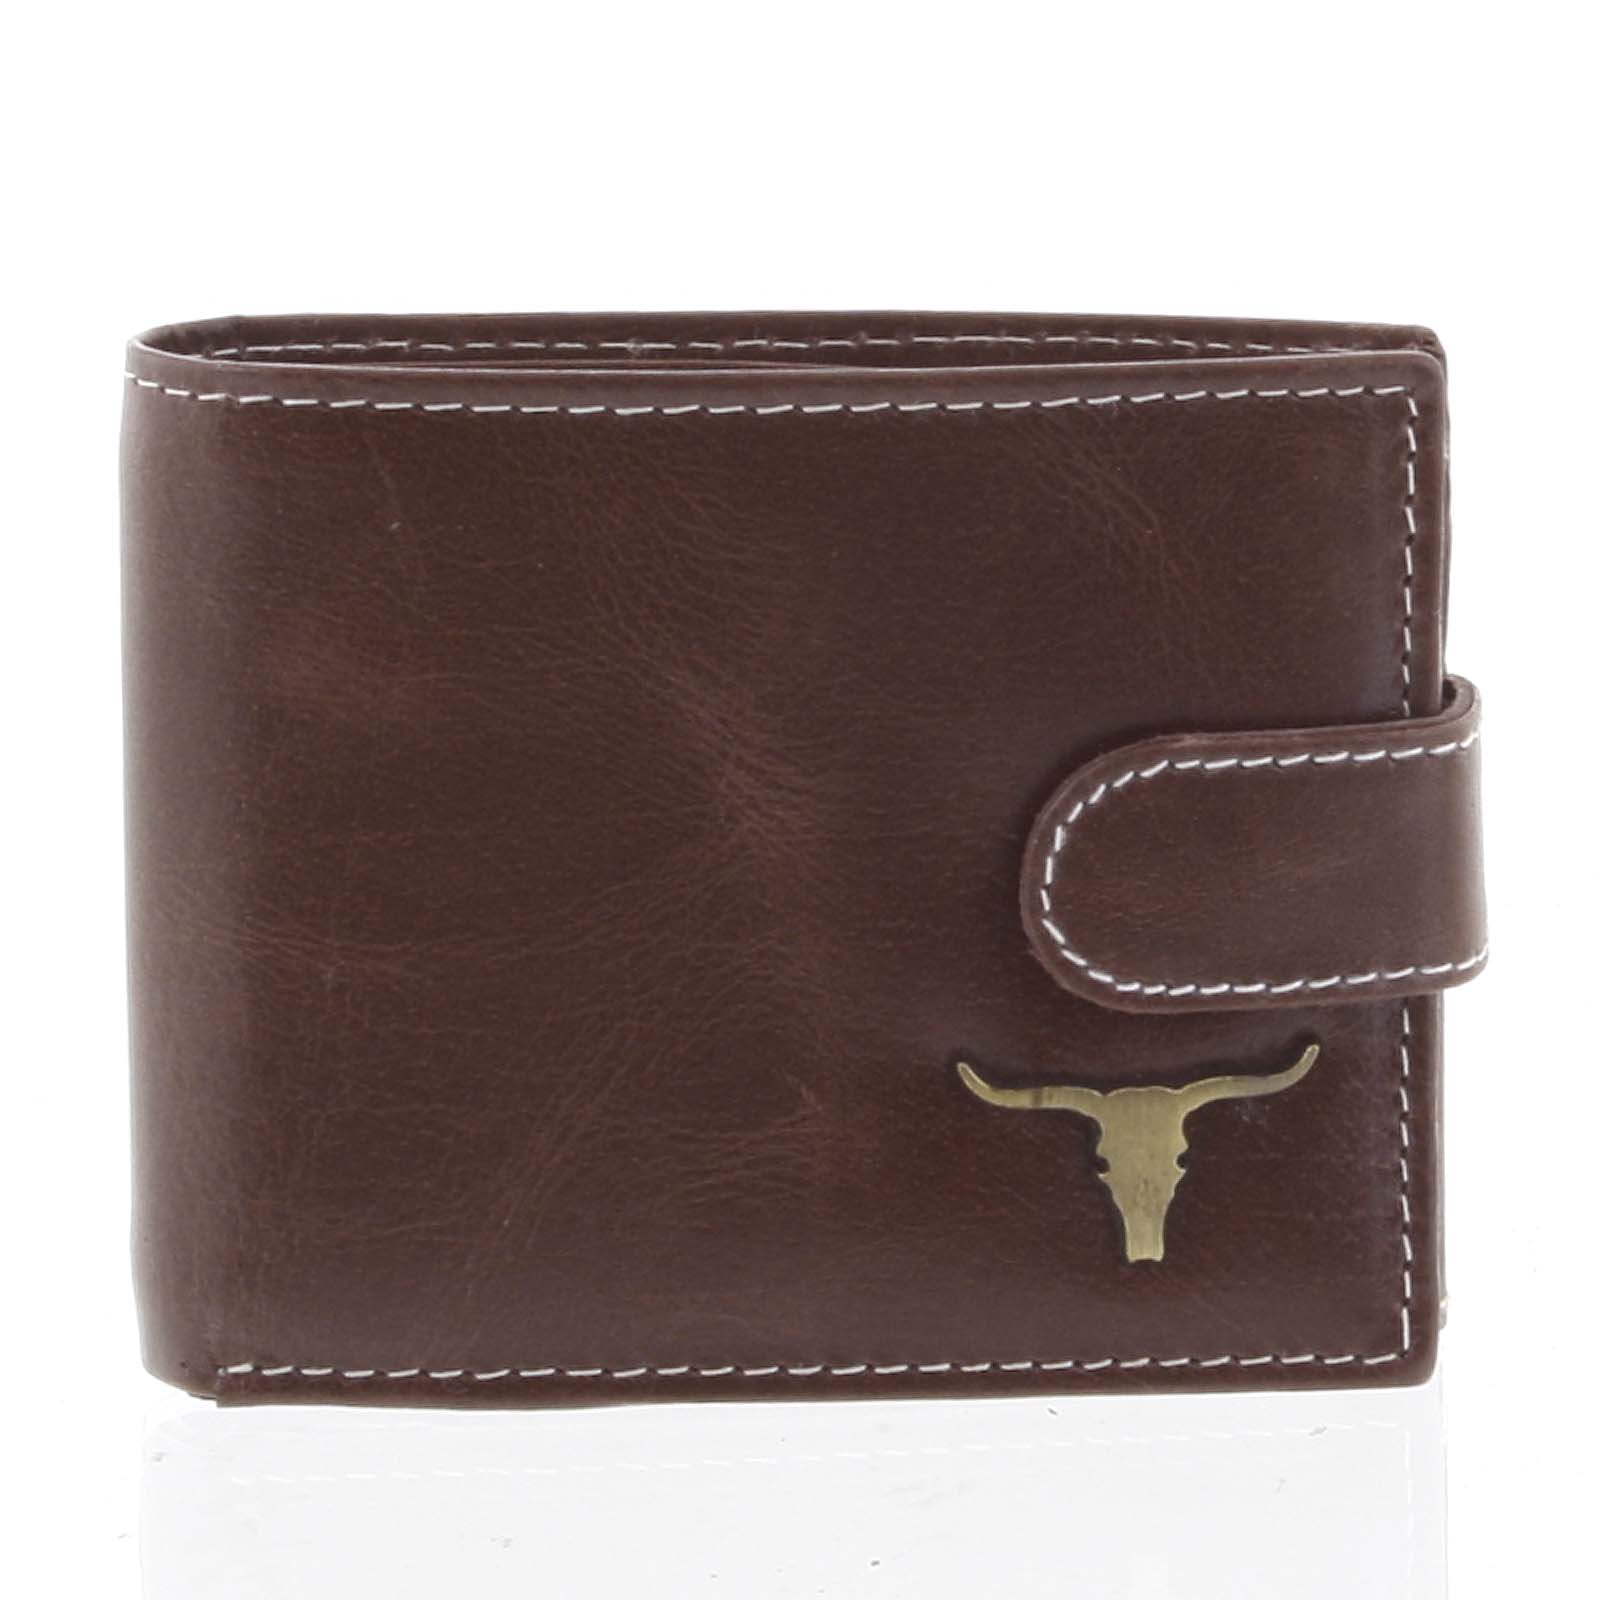 Moderná pánska kožená peňaženka hnedá - BUFFALO Paise